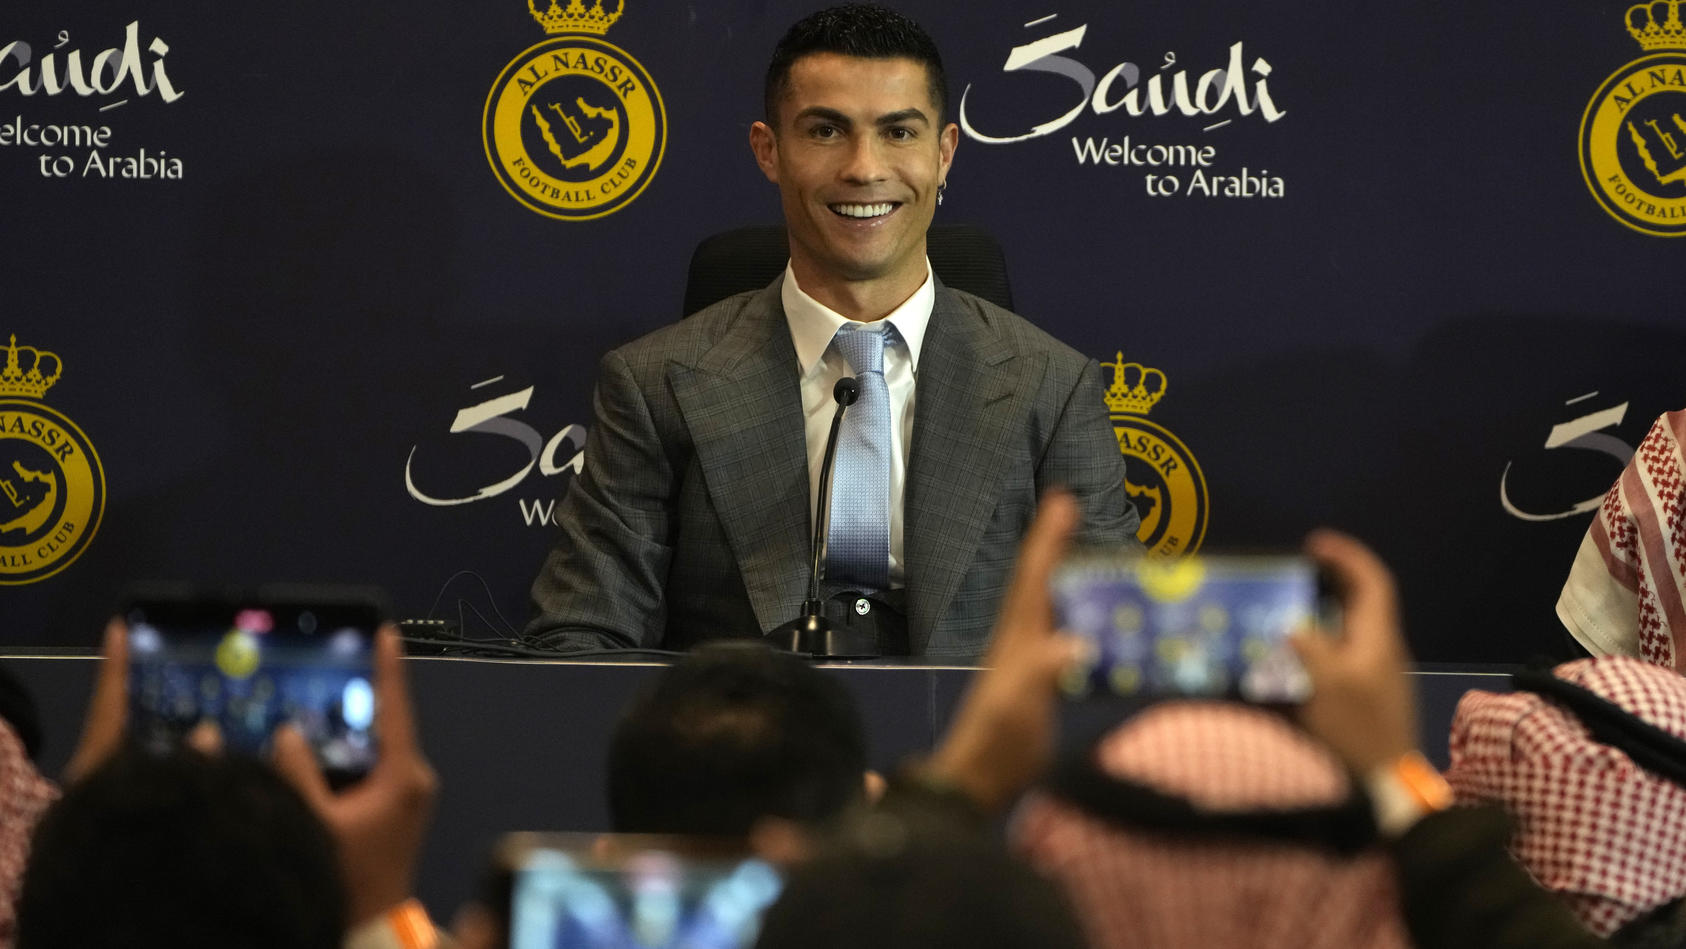 03.01.2023, Saudi-Arabien, Riad: Cristiano Ronaldo, portugiesischer Fußballstar, lächelt während einer Pressekonferenz zu seiner offiziellen Vorstellung beim Fußballverein Al Nassr. Ronaldo schloss einen lukrativen Wechsel zum saudi-arabischen Klub A